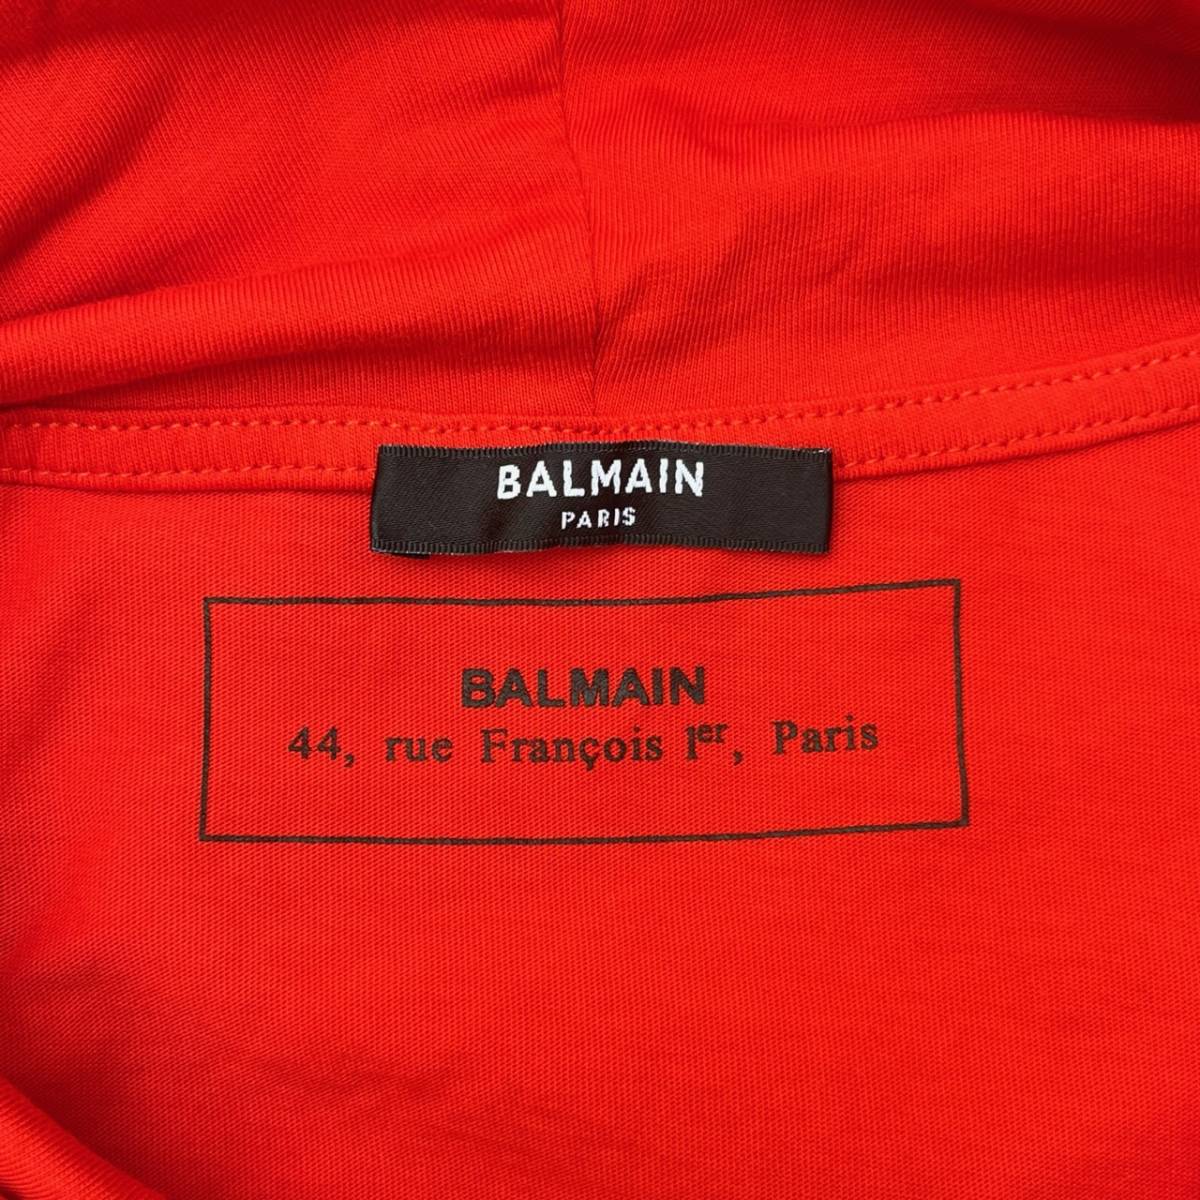 BALMAIN バルマン Lサイズ ショートスリーブTシャツ フード付きTシャツ 半袖 オレンジ